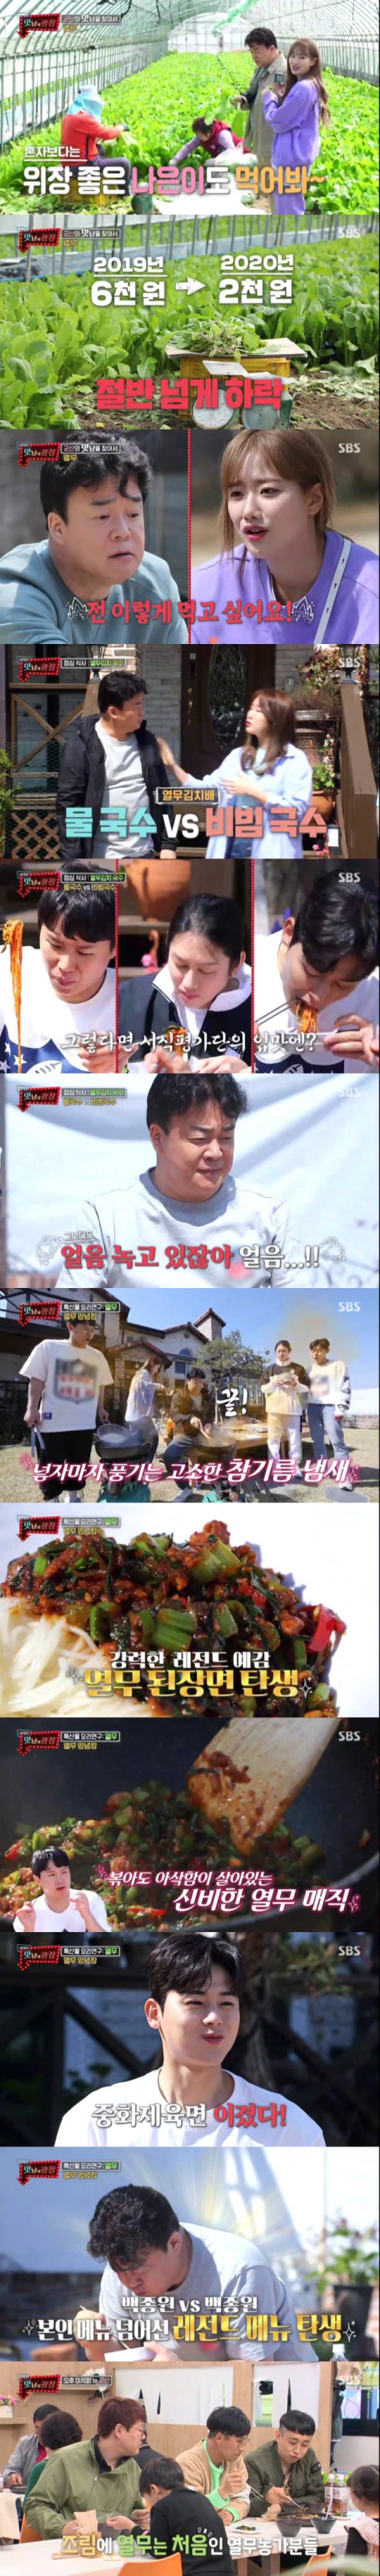 SBS ‘맛남의 광장’ 방송 화면.